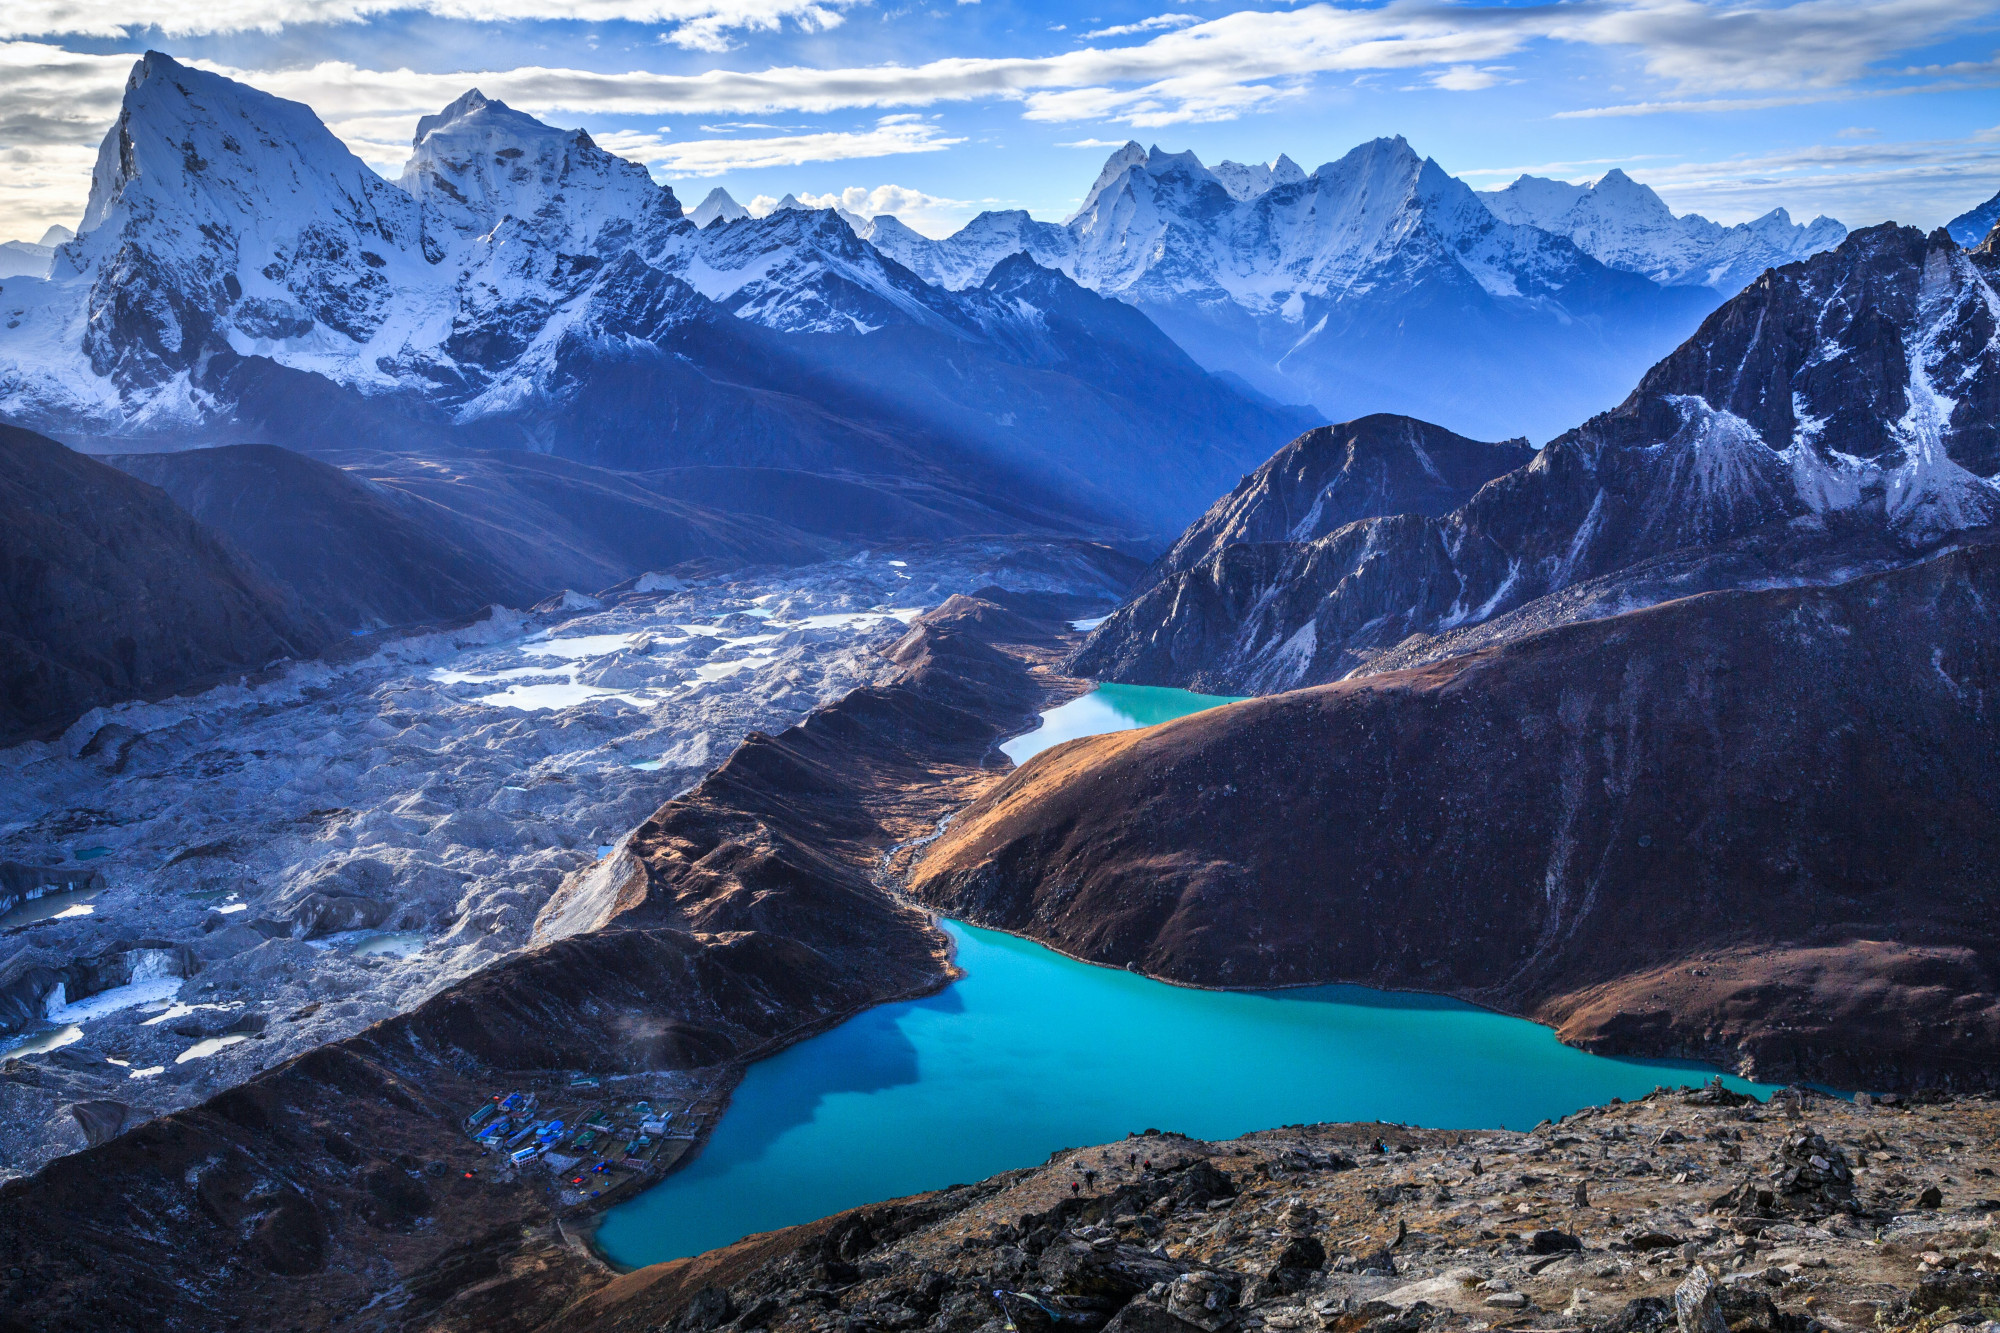 Leo núi Hymalaya: Himalaya hay Hy Mã Lạp Sơn là một dãy núi ở châu Á, phân chia tiểu lục địa Ấn Độ khỏi cao nguyên Tây Tạng. Mở rộng ra, đó cũng là tên của một hệ thống núi hùng vĩ bao gồm cả Himalaya theo đúng nghĩa của từ này, Karakoram, Hindu Kush và các dãy núi nhỏ khác trải dài từ dãy núi Pamir